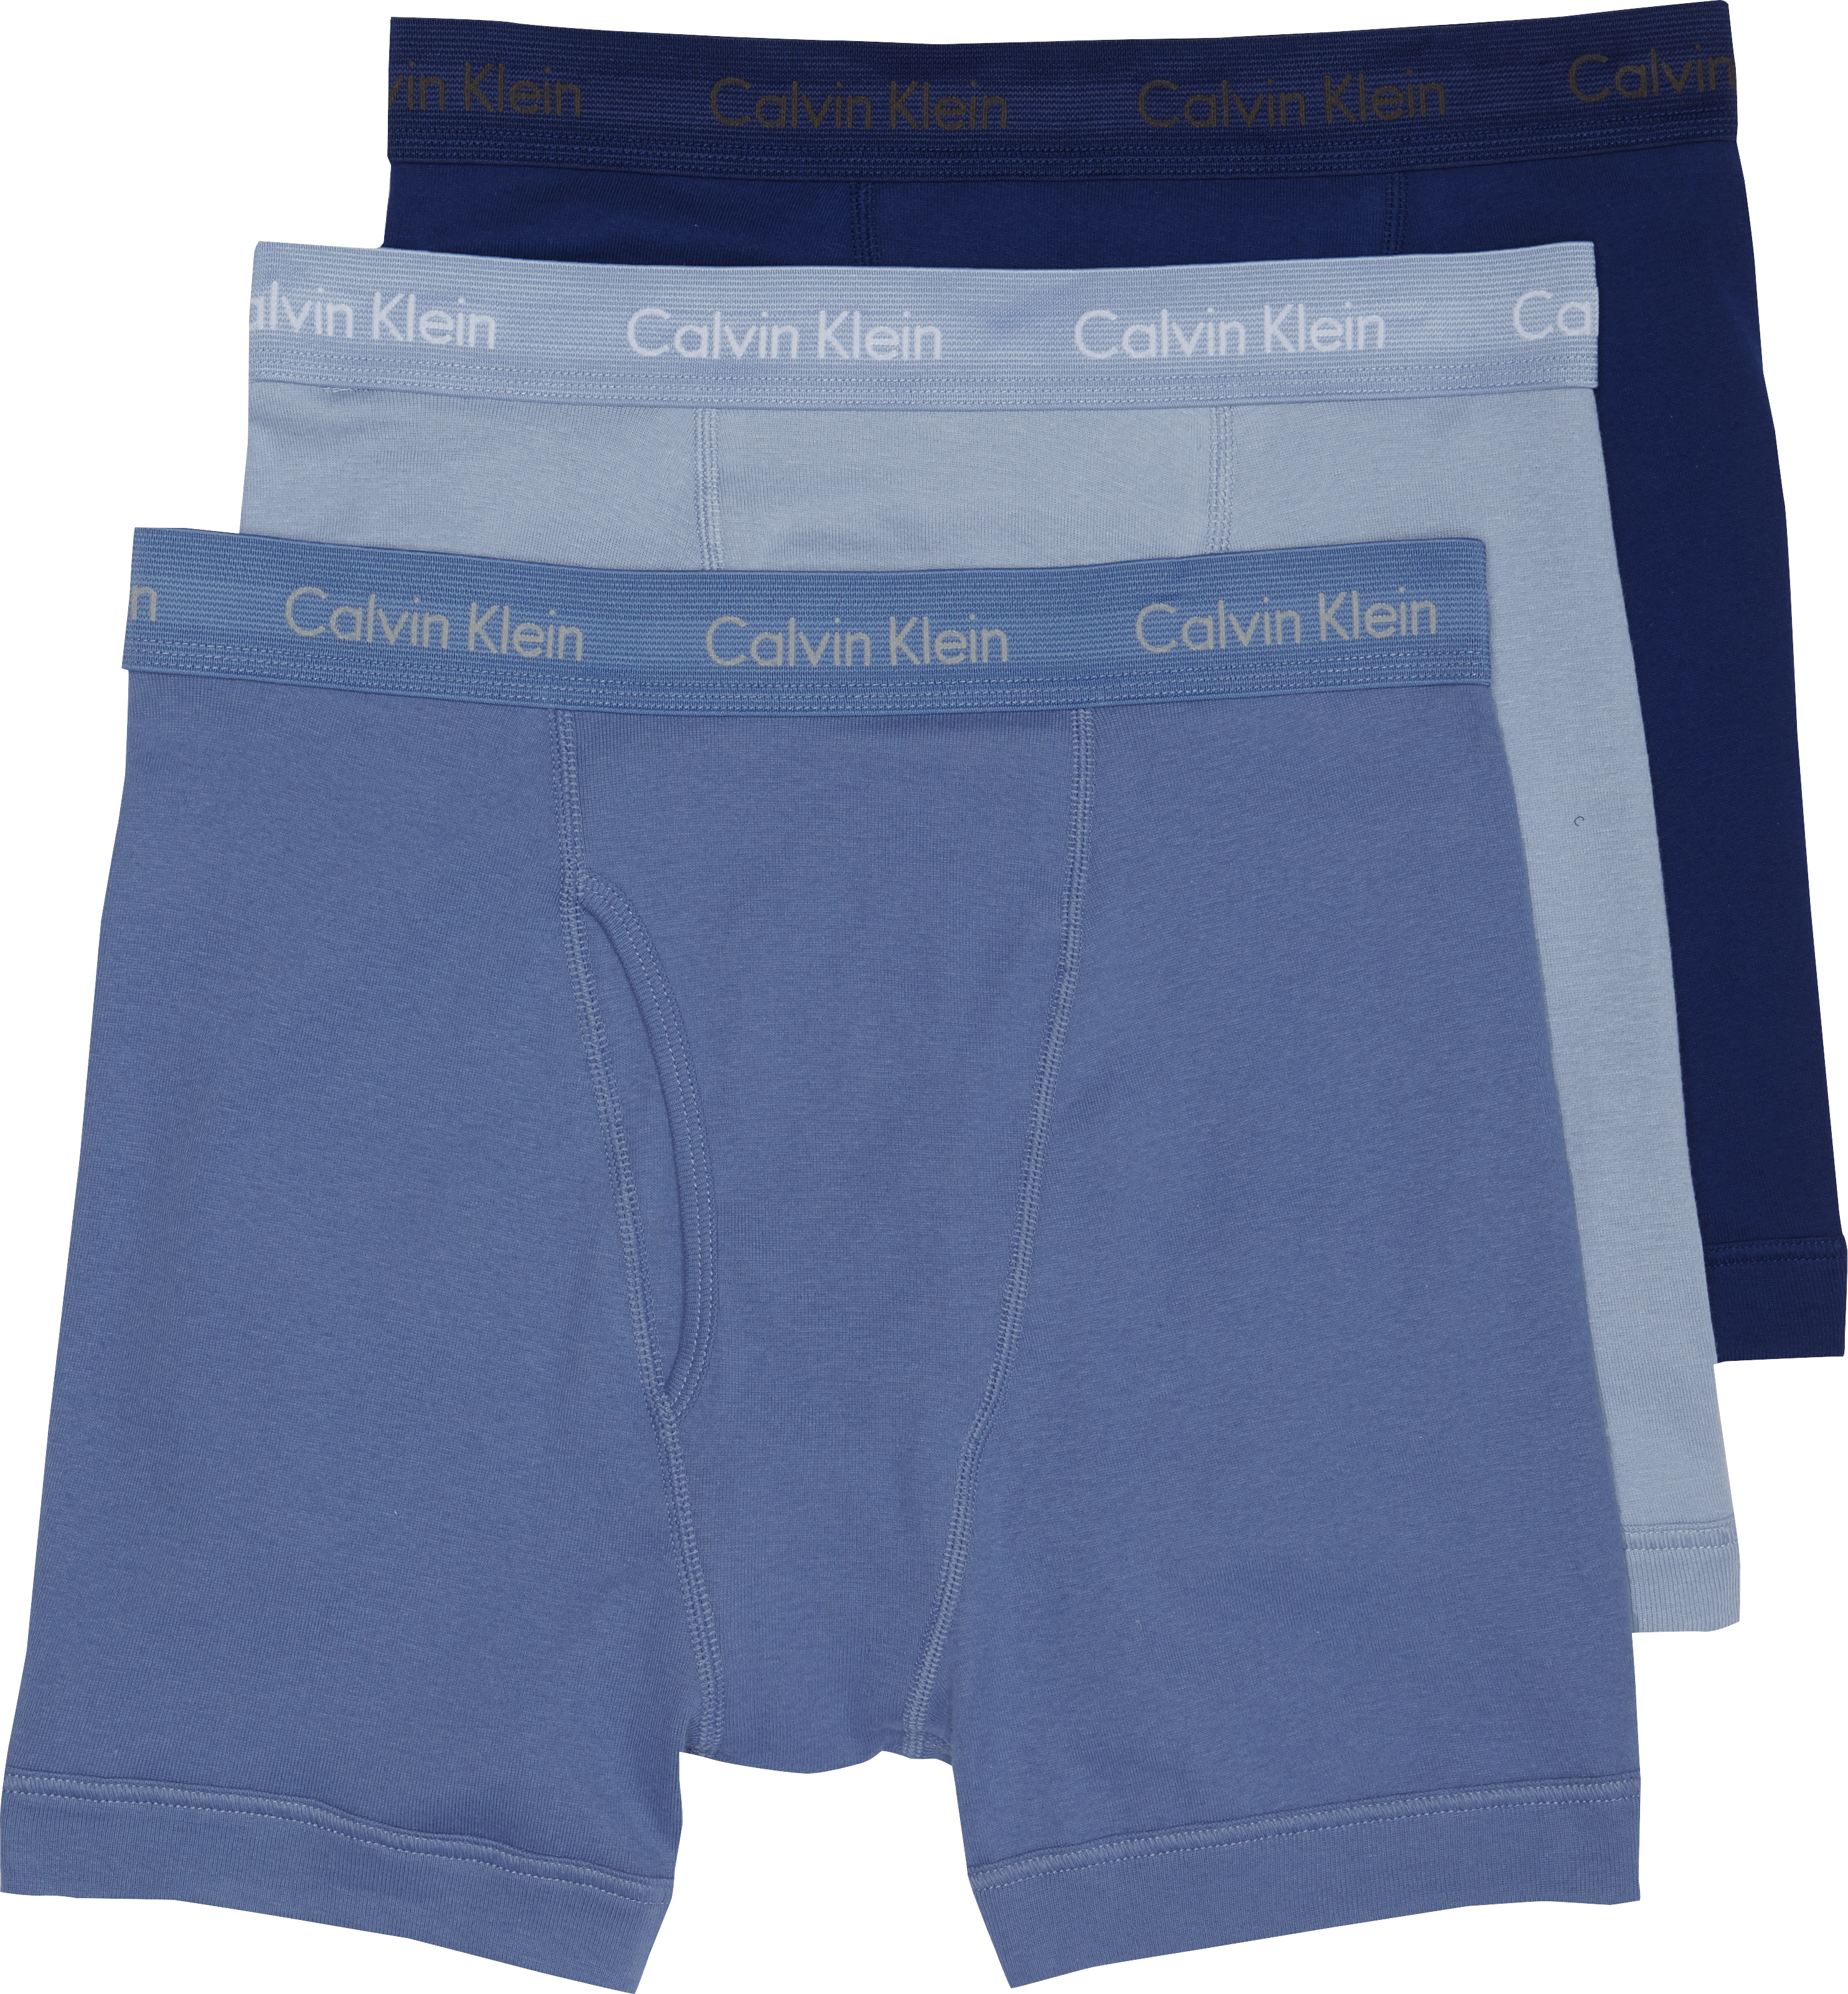 Calvin Klein Blue Cotton Classic Boxer Briefs, 3-Pack - Men's Sale ...